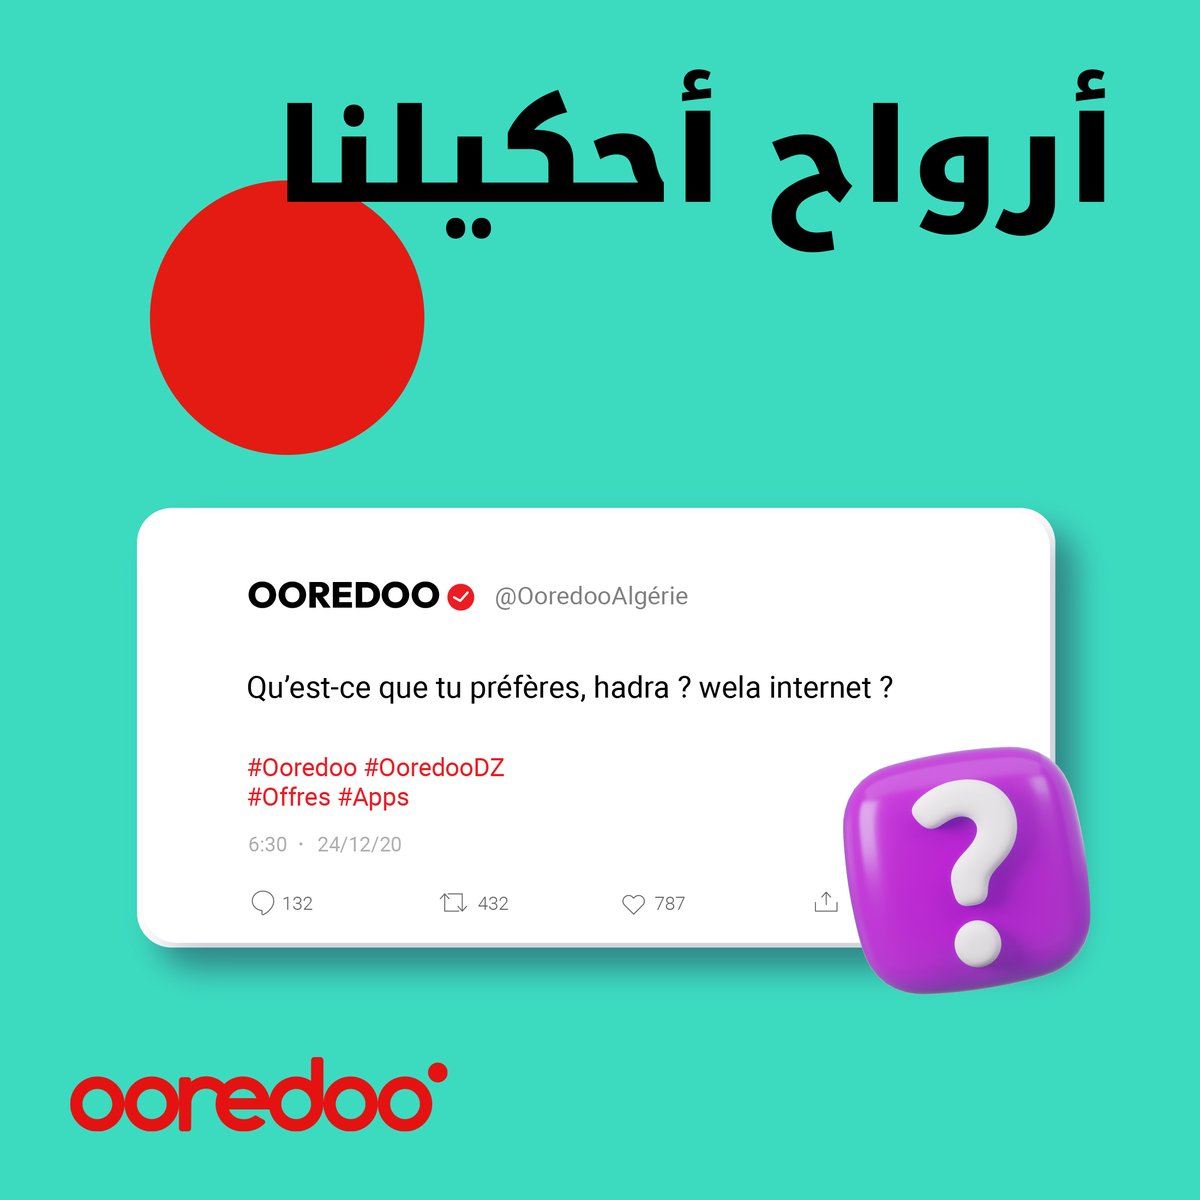 قولولنا في التعليقات واش تفضلوا أكثر

هدرة ولا إنترنت ؟

اكتشفوا جميع عروضنا هنا:👇
ooredoo.dz/fr/

#Ooredoo #OoredooDZ #Offres #Services #Apps